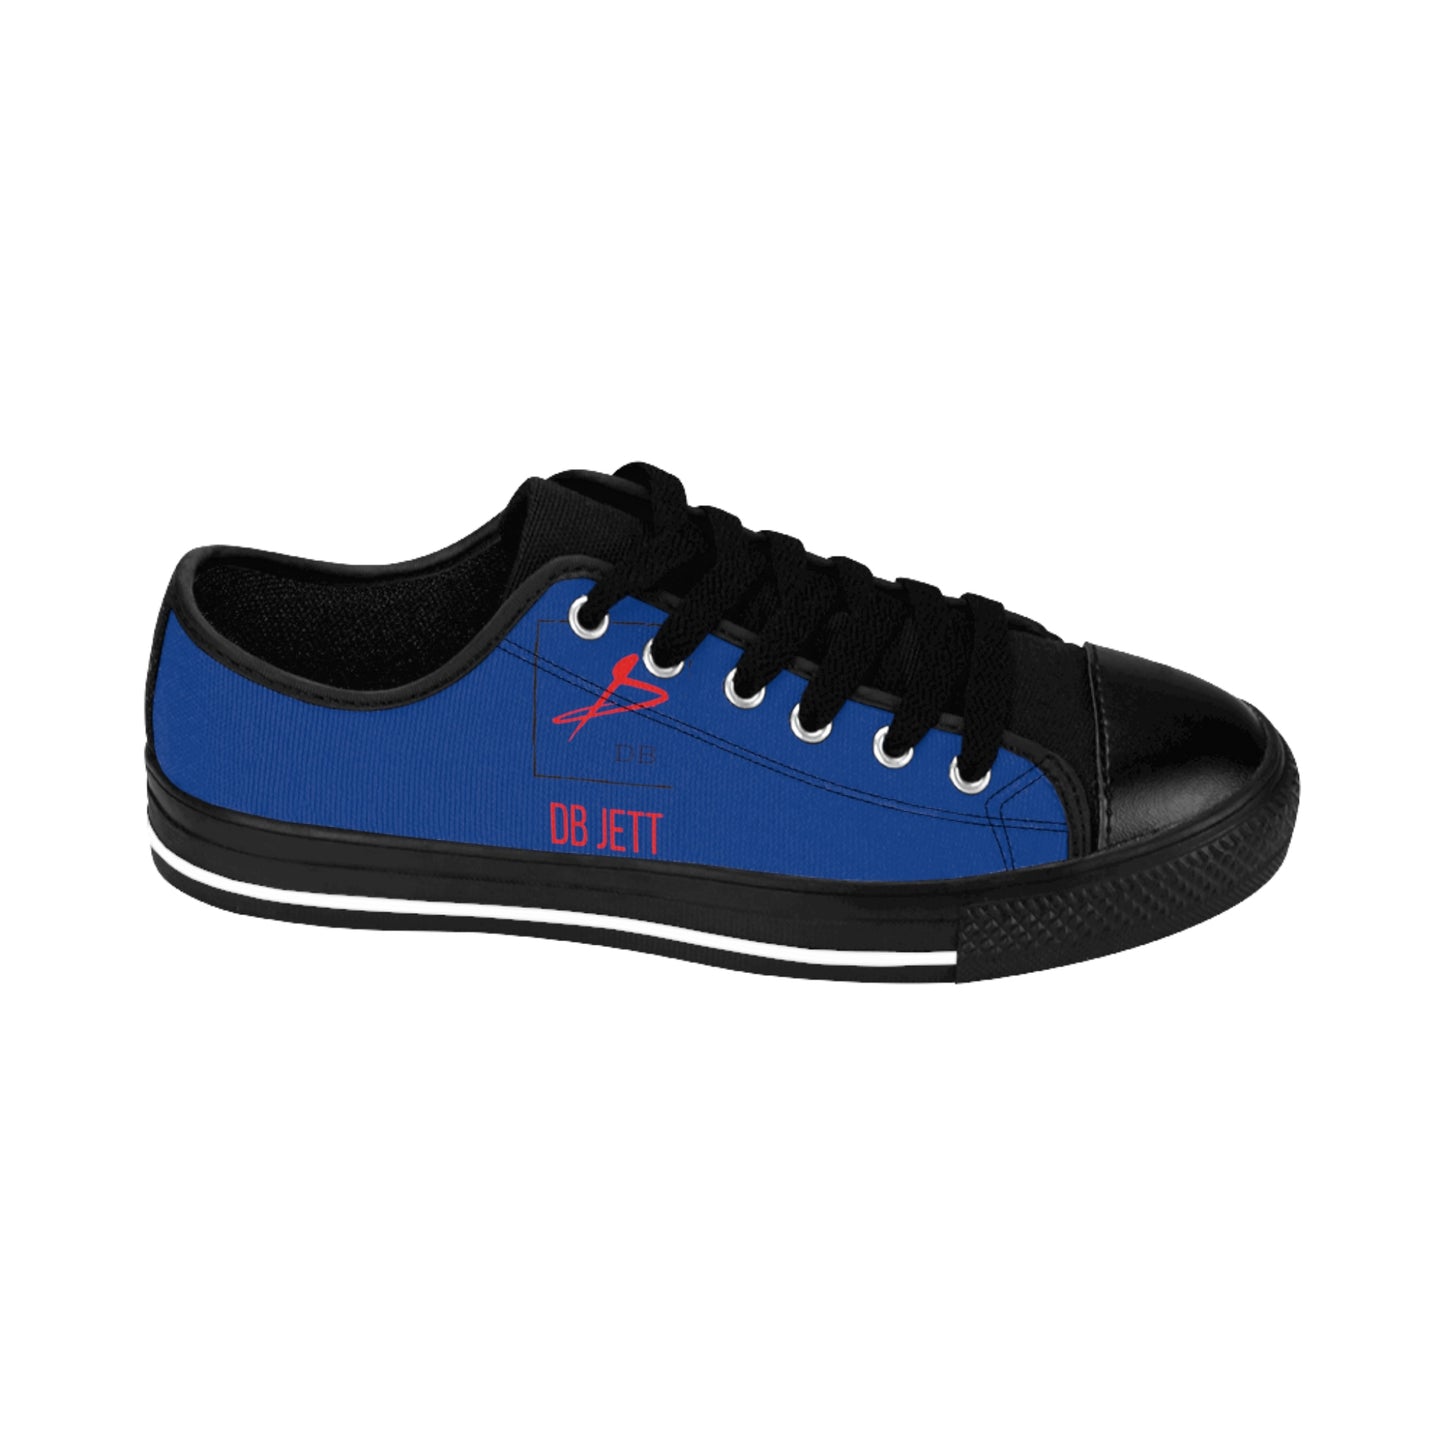 DB JETT Blue Low Tops - Women's Sneakers